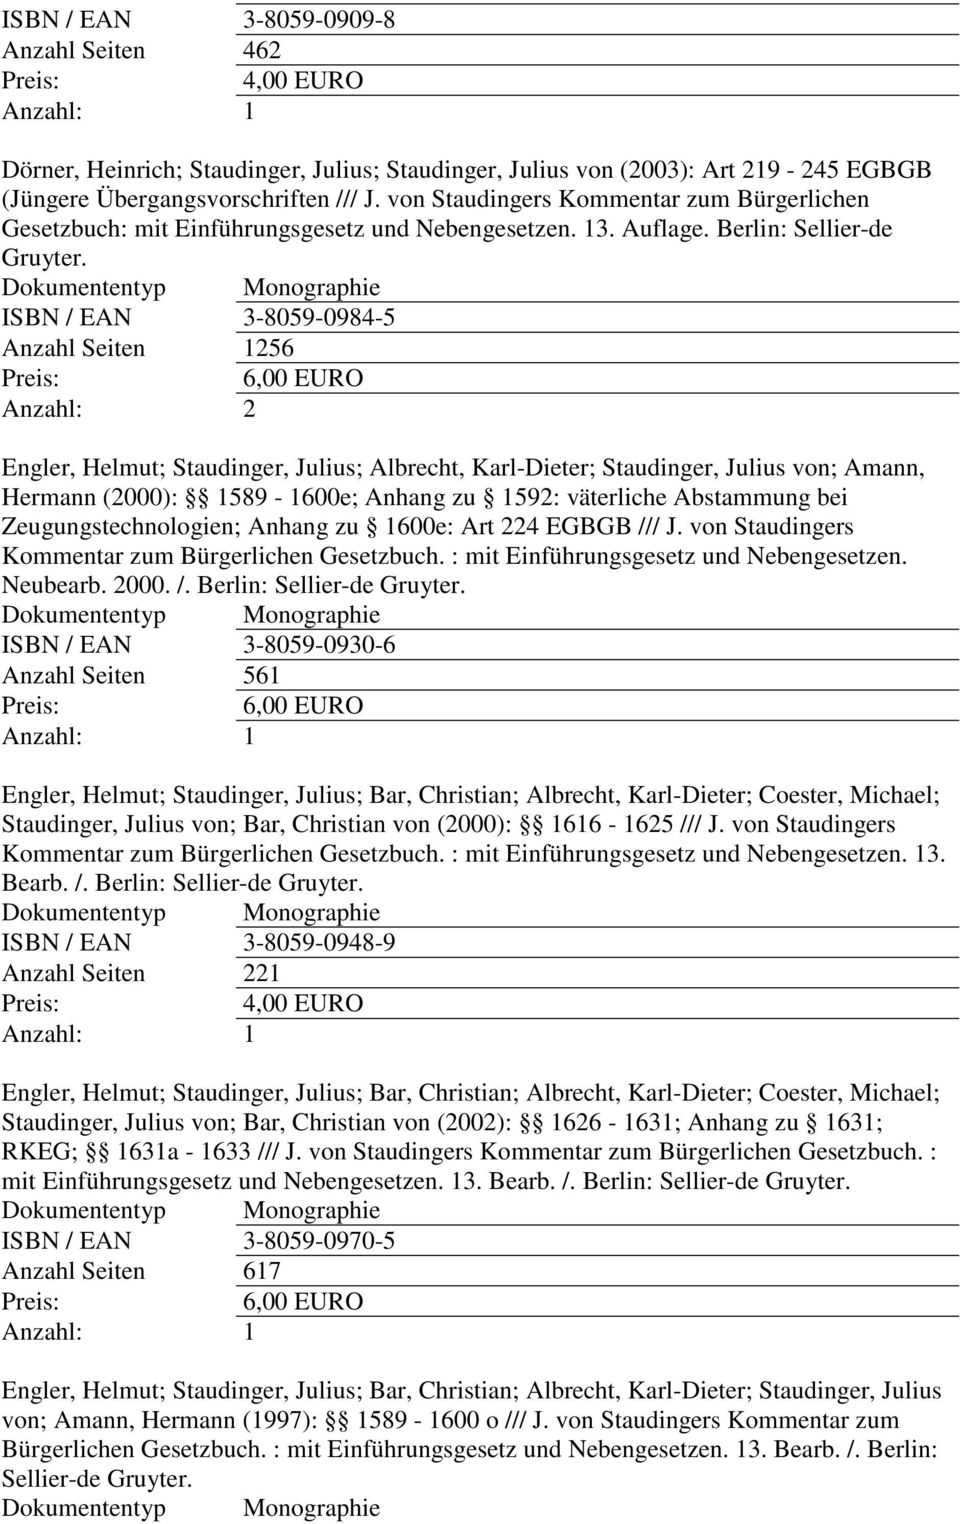 ISBN / EAN 3-8059-0984-5 Anzahl Seiten 1256 Engler, Helmut; Staudinger, Julius; Albrecht, Karl-Dieter; Staudinger, Julius von; Amann, Hermann (2000): 1589-1600e; Anhang zu 1592: väterliche Abstammung